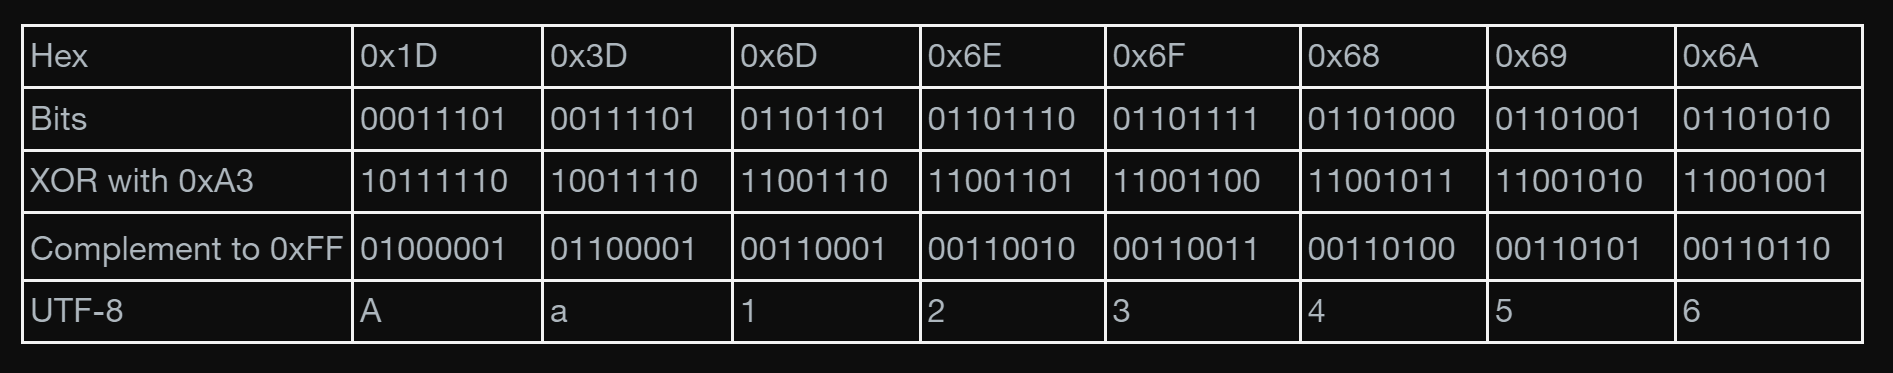 WinSCPのパスワード復号手順。この表のように「0xA3」とのXORを取ってからその補数を求める。 